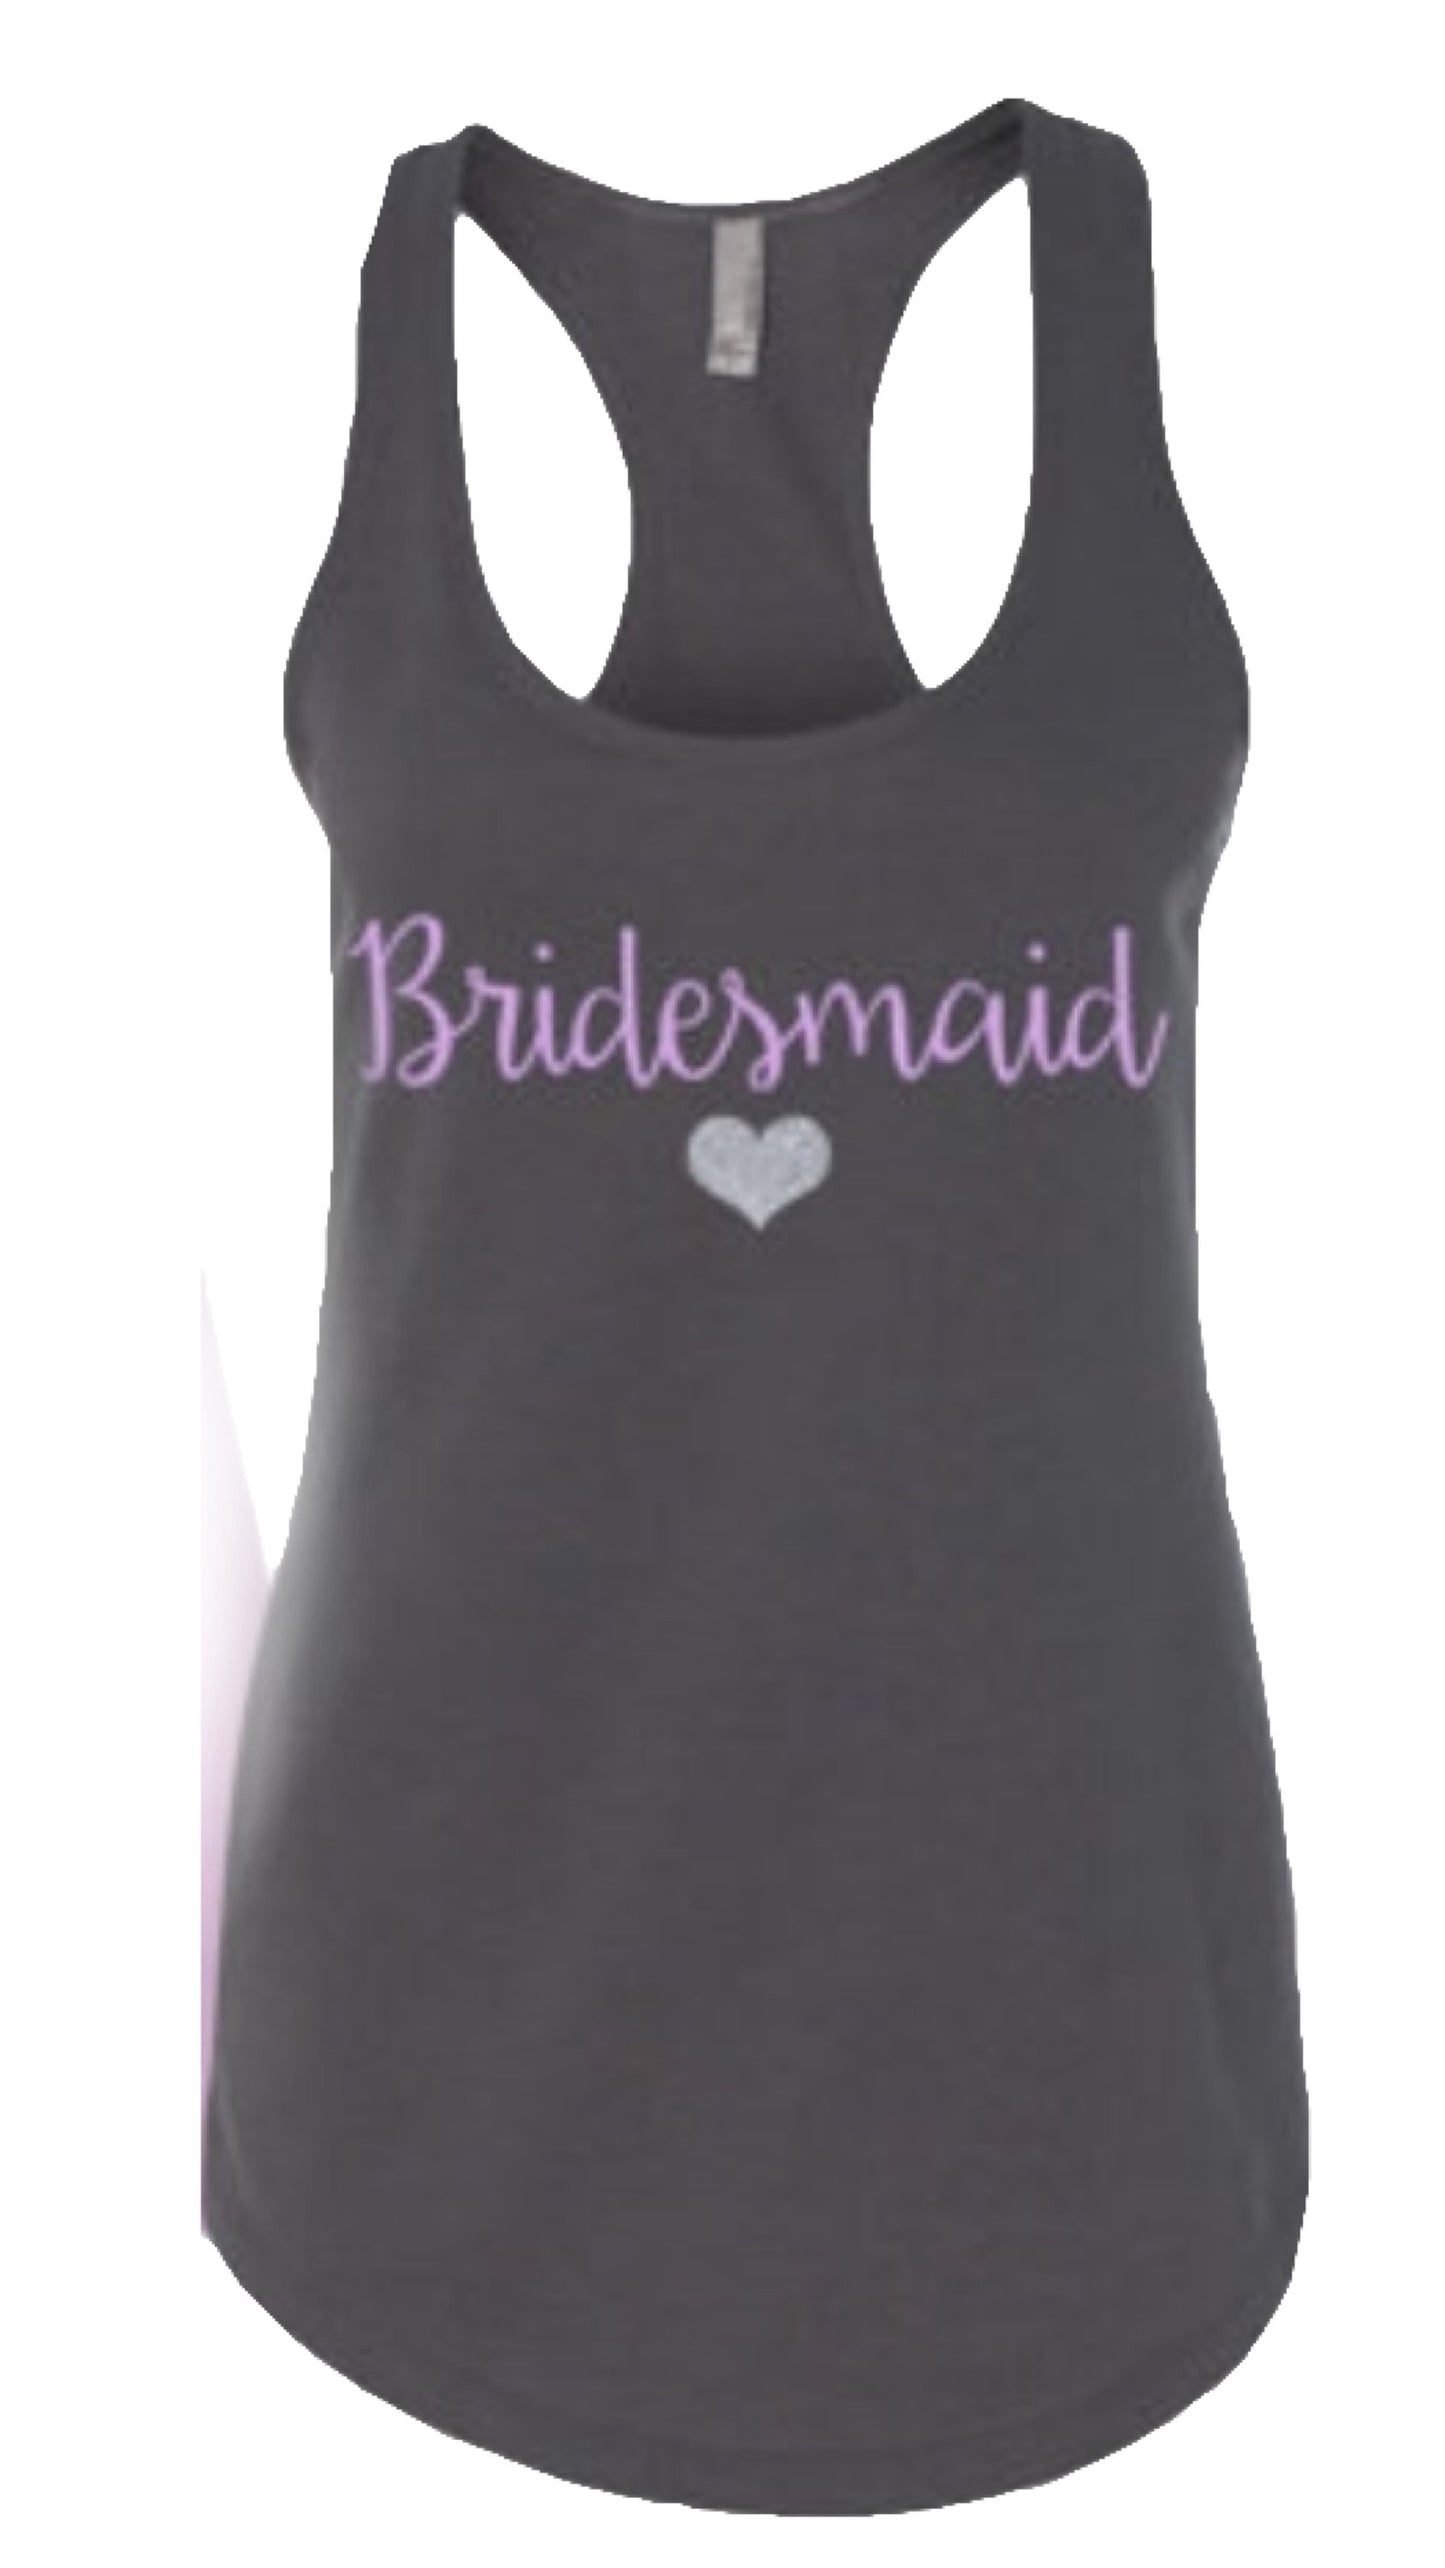 Bride and bridesmaid shirts, bridesmaid shirts, bride shirt, bride and co shirts, bridesmaid shirts, bachelorette weekend, Nashville Bachelo